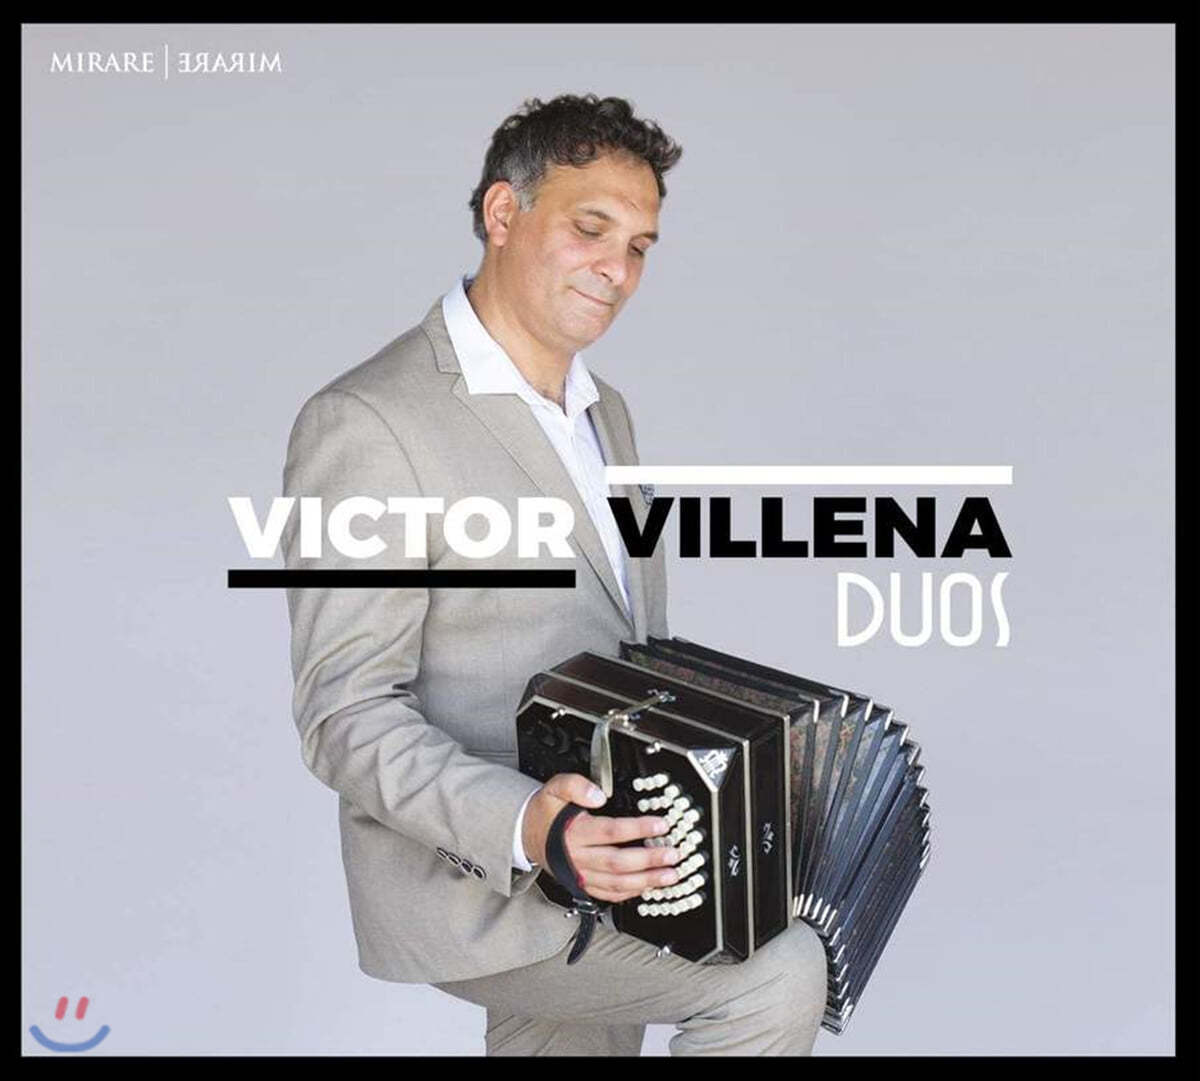 Victor Villena - Duos (빅터 빌레나 - 듀오) 